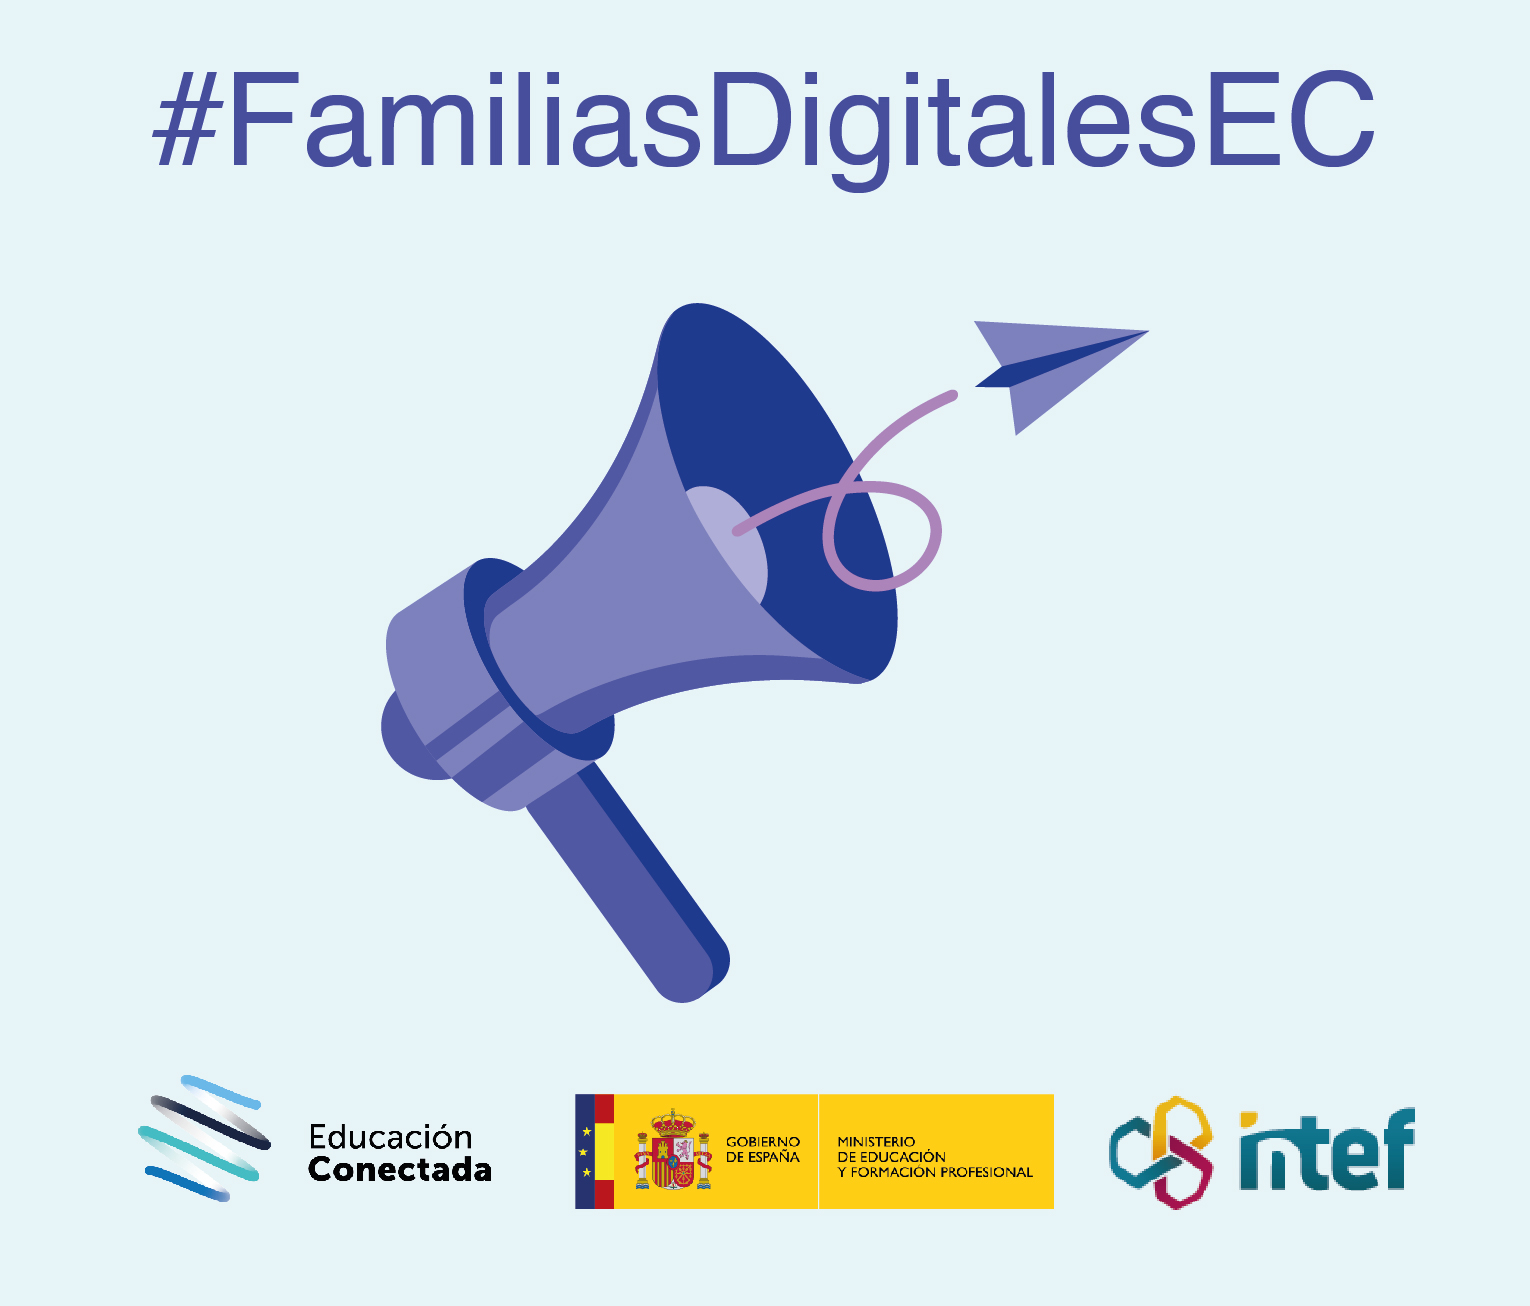 Competencias digitales en la familia: comunicación y colaboración online (básico) FamiliasDig7